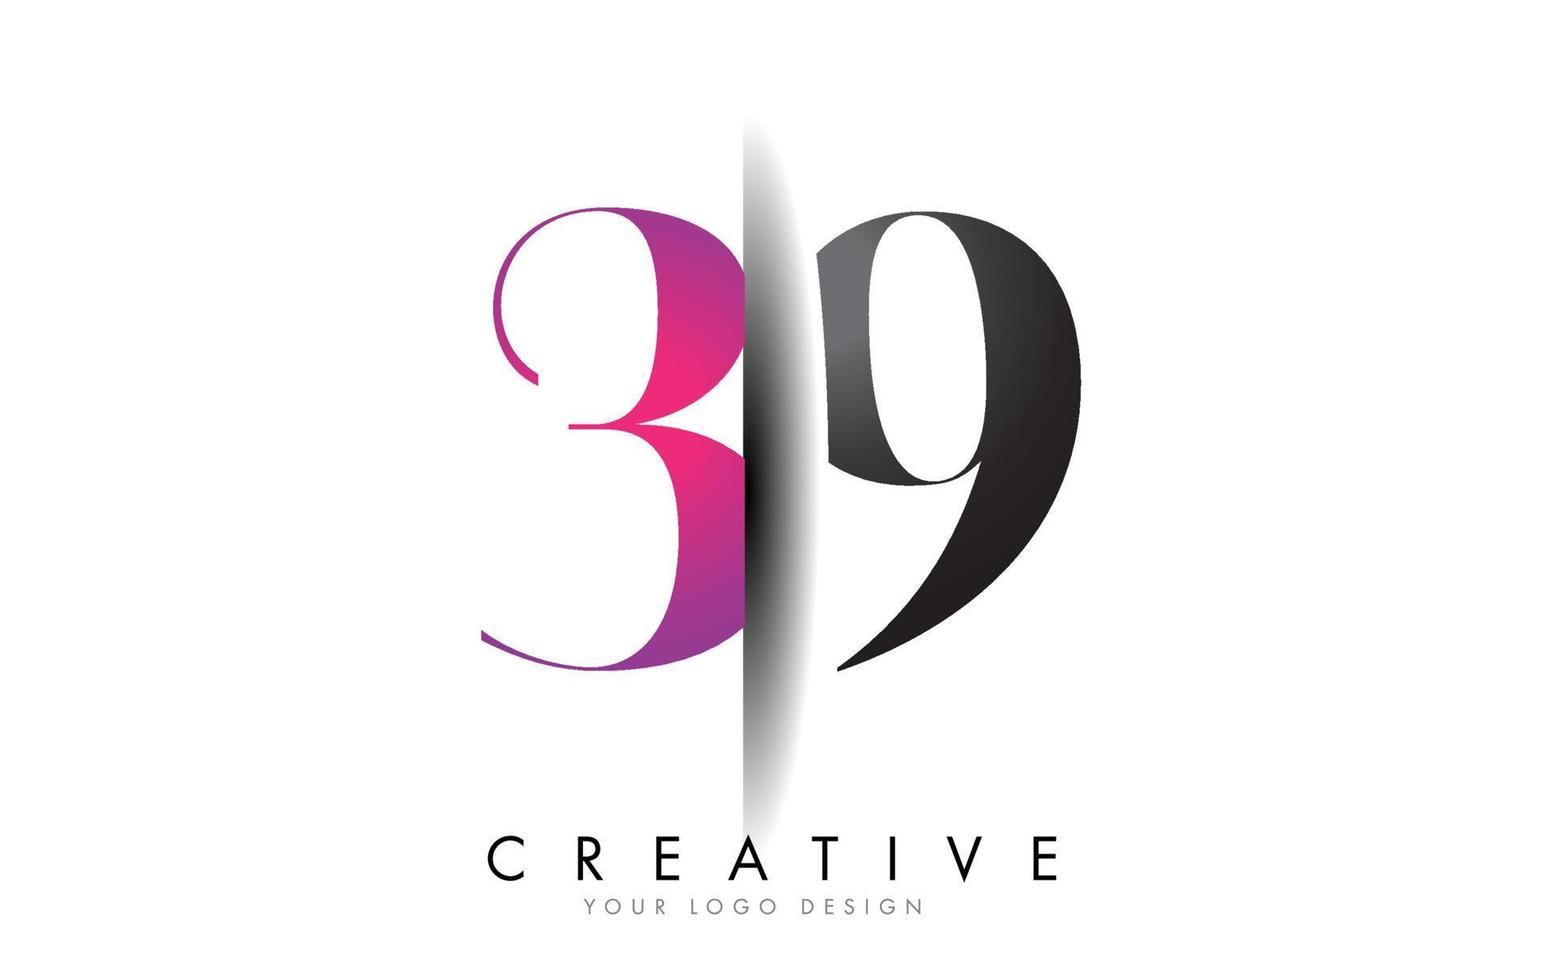 39 3 9 logotipo de número gris y rosa con vector de corte de sombra creativa.